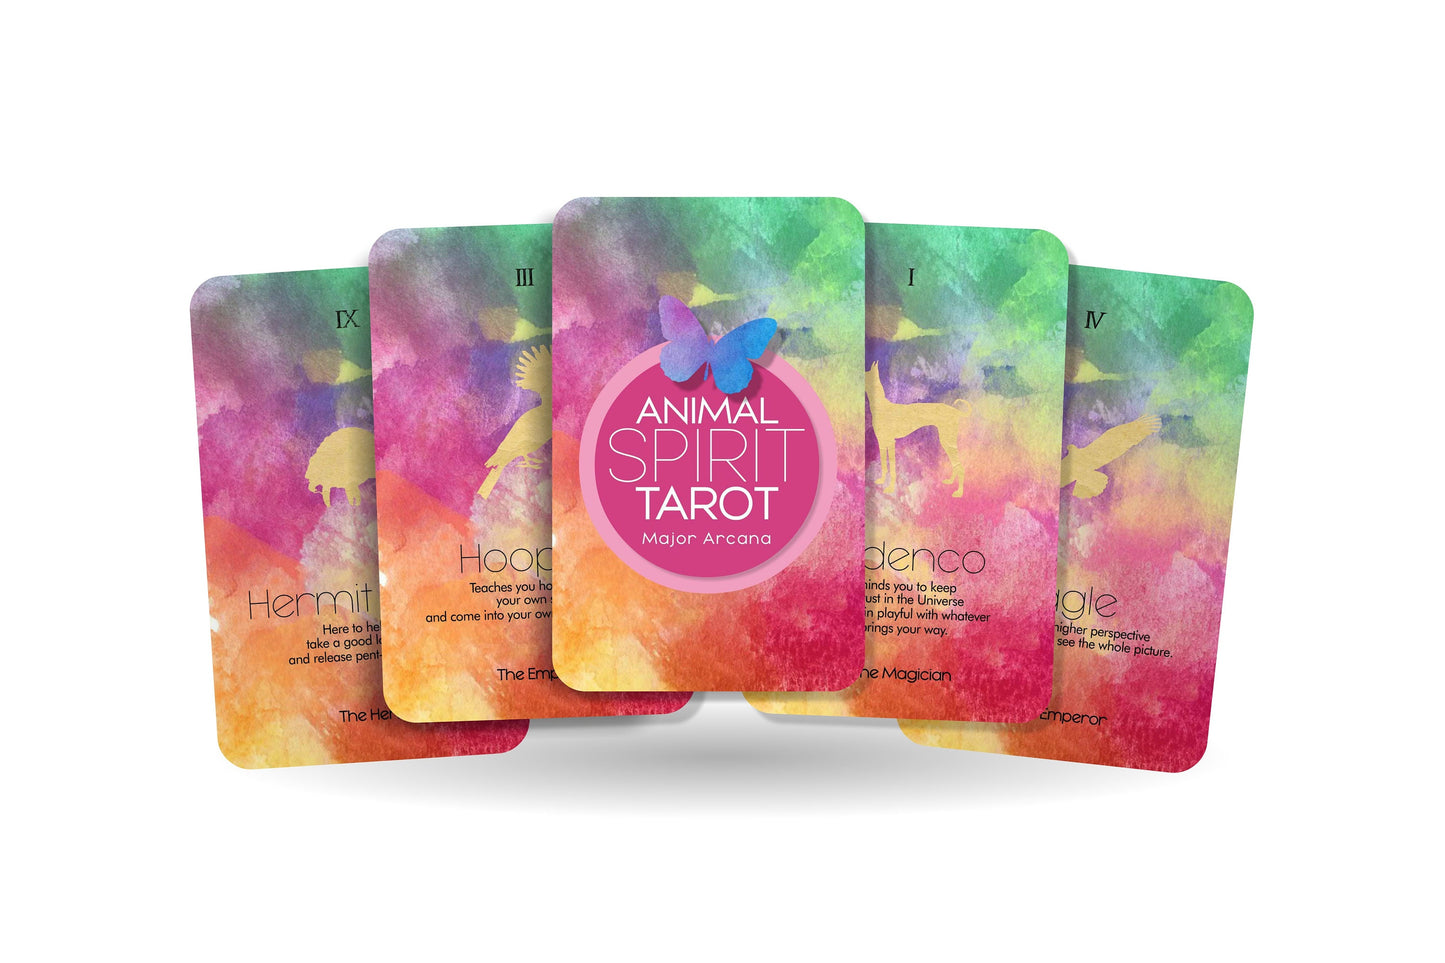 Animal Spirit Tarot  - Major Arcana Tarot Cards - Divination Tool - Tarot Deck - 22 power Animals